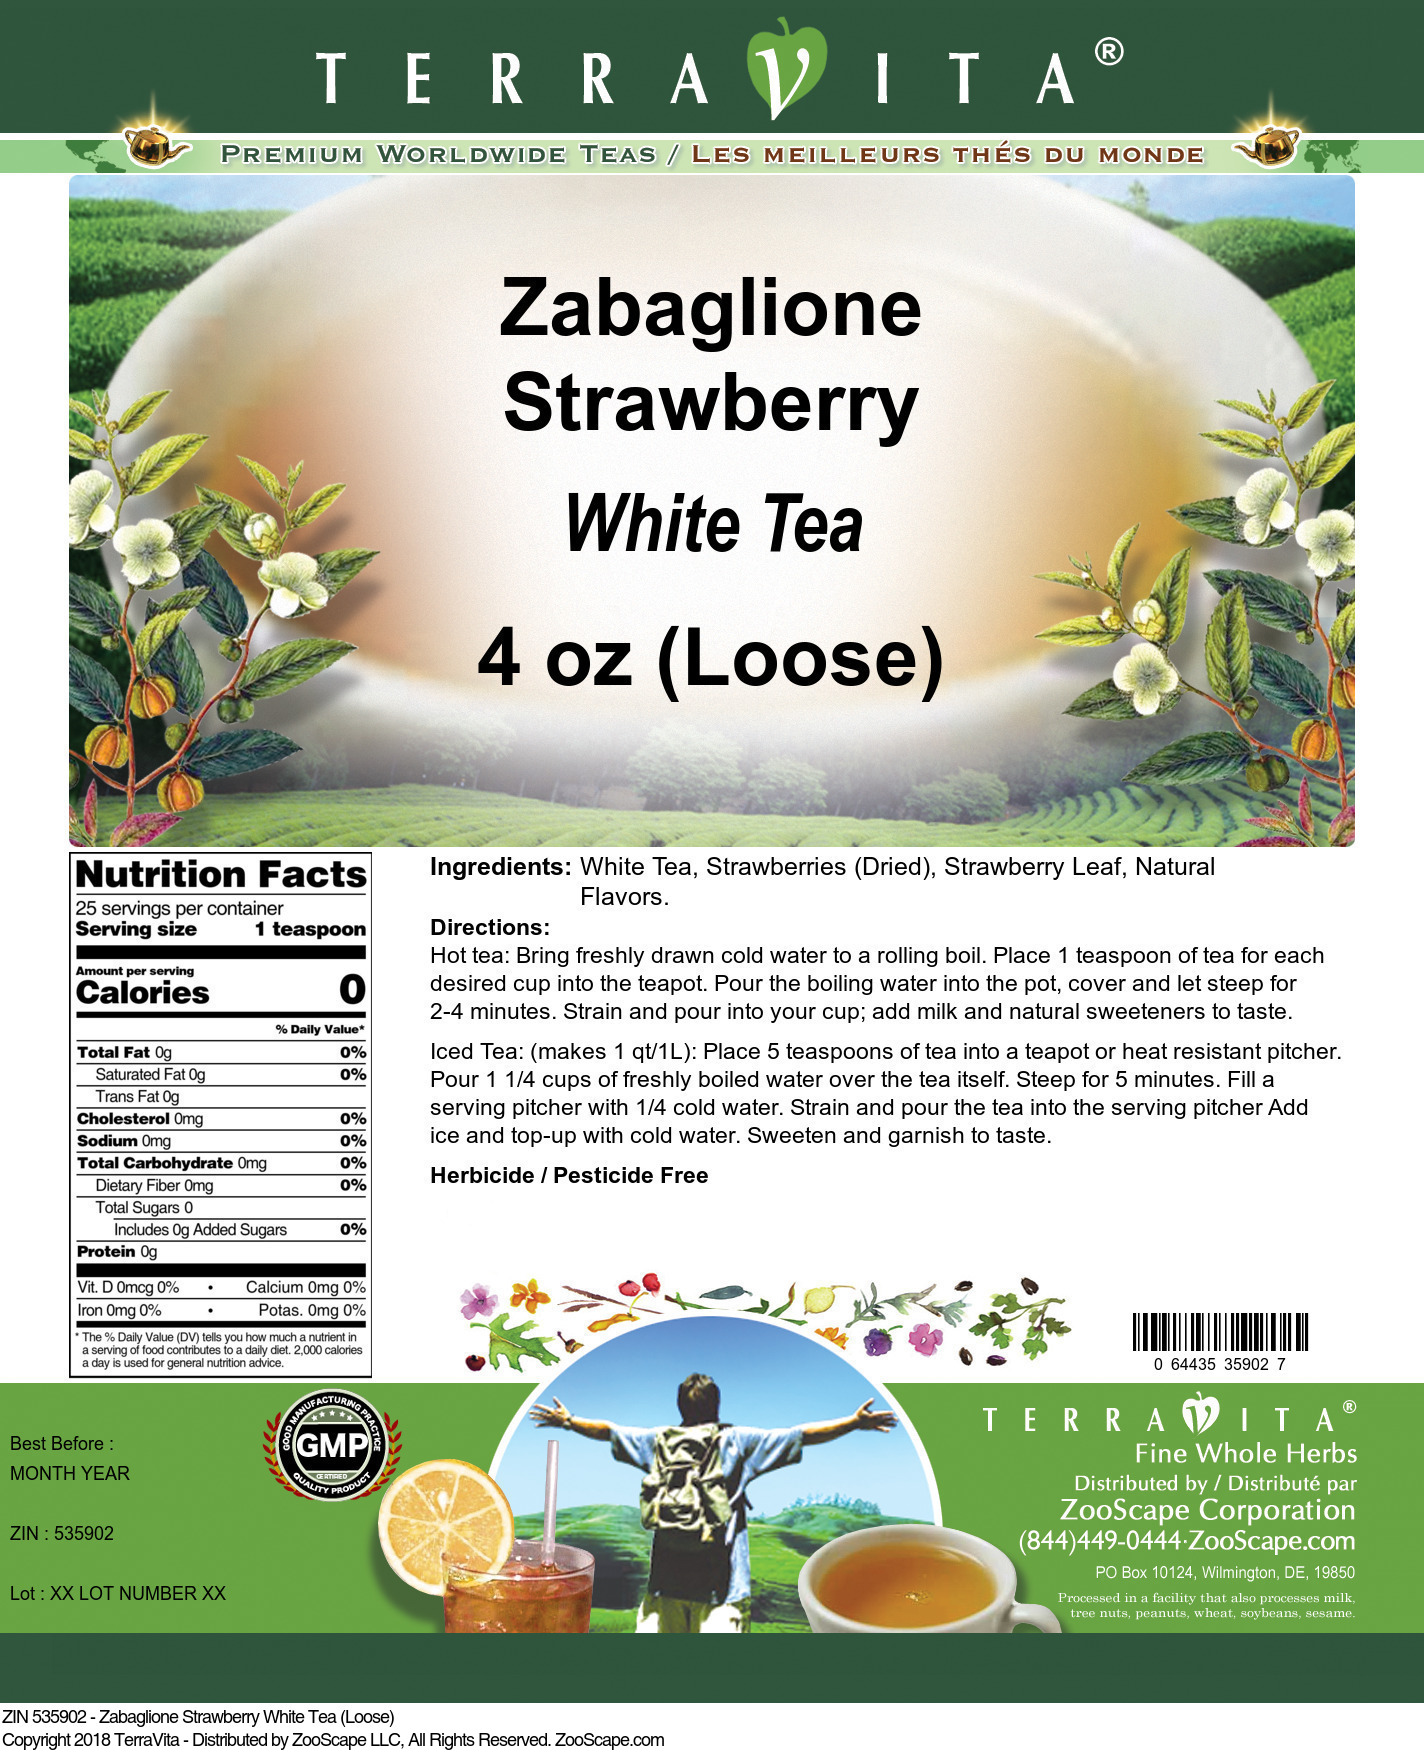 Zabaglione Strawberry White Tea (Loose) - Label